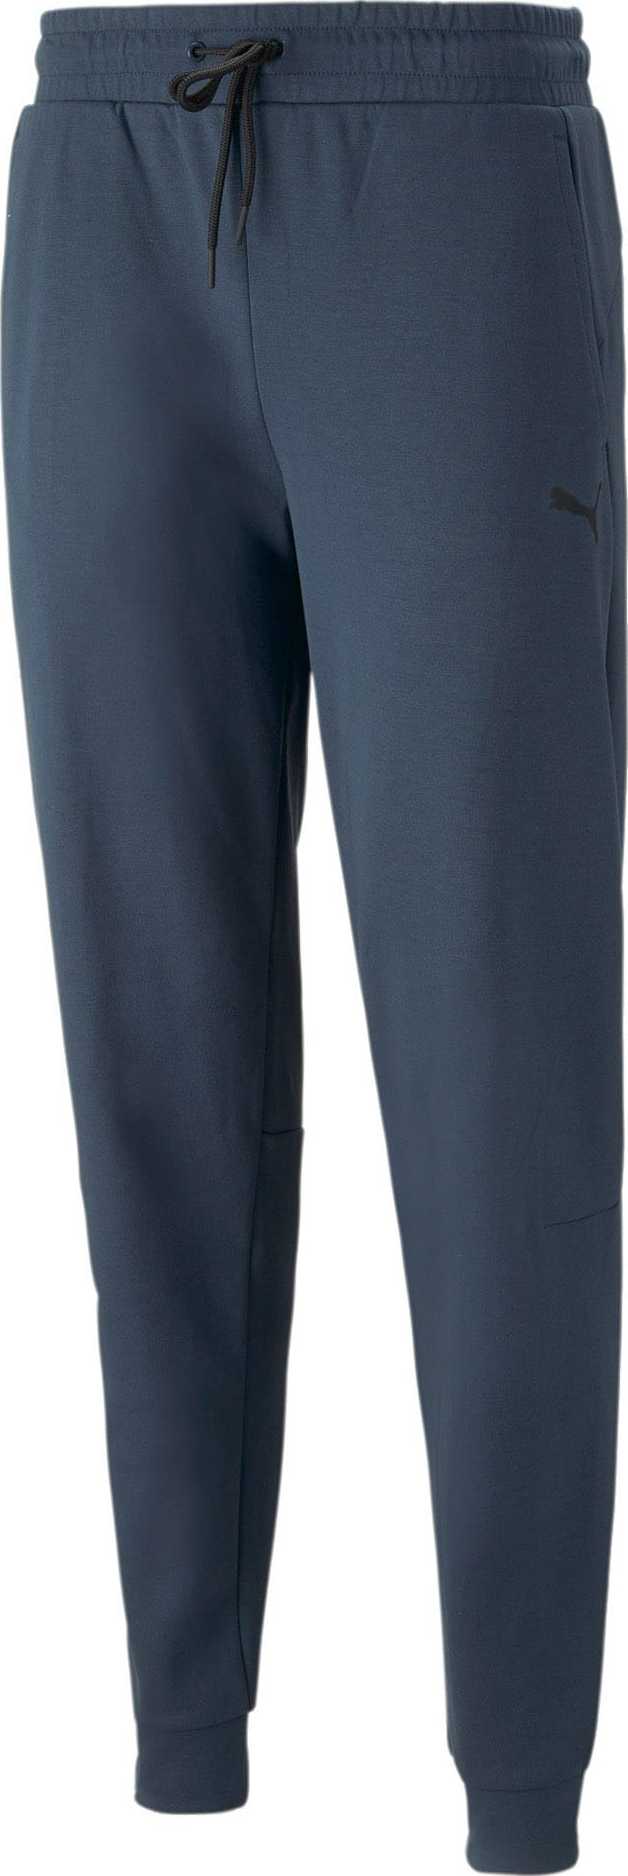 PUMA Sportovní kalhoty marine modrá / černá